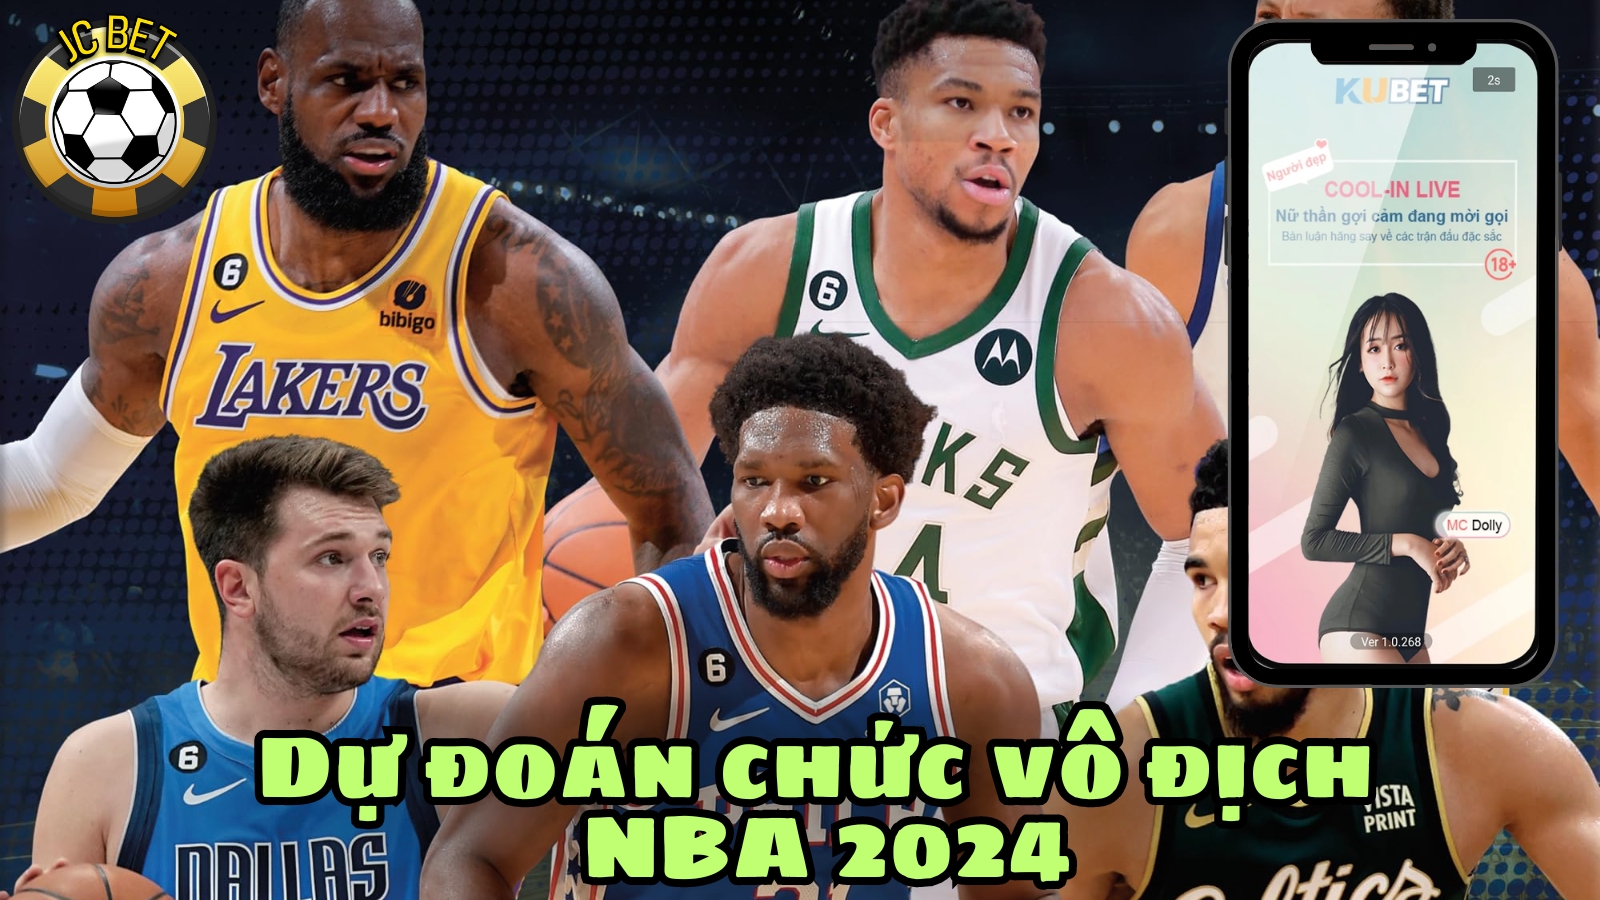 Dự đoán chức vô địch NBA 2024: Liệu đội tuyển nào chắc suất Play-in 